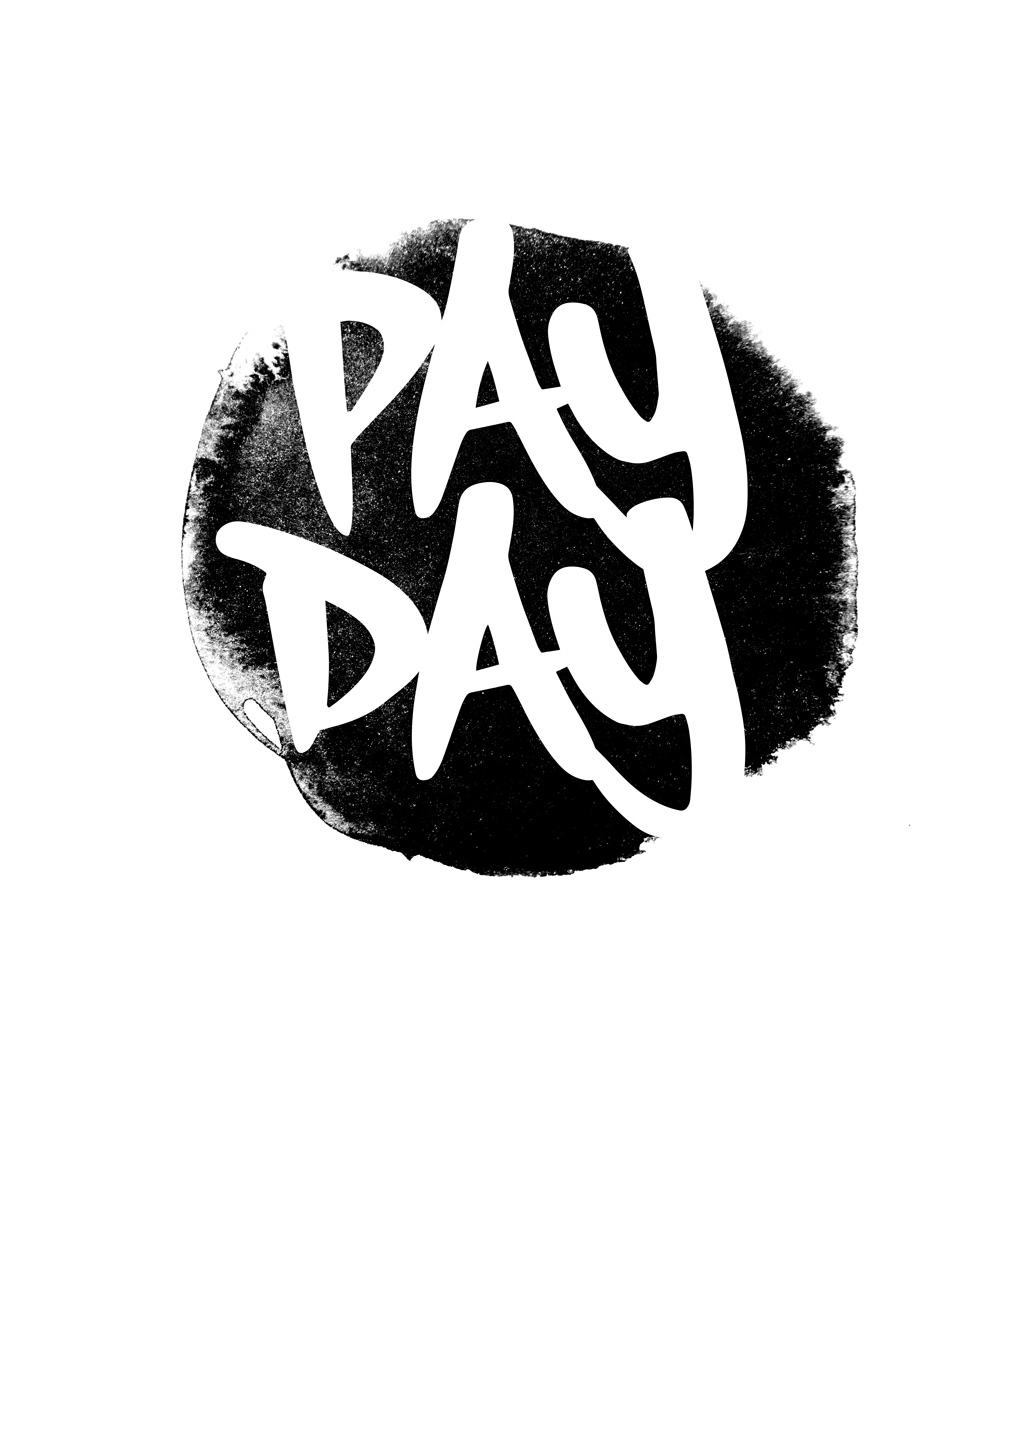 Se Pay day af Ten Valleys hos Illux.dk